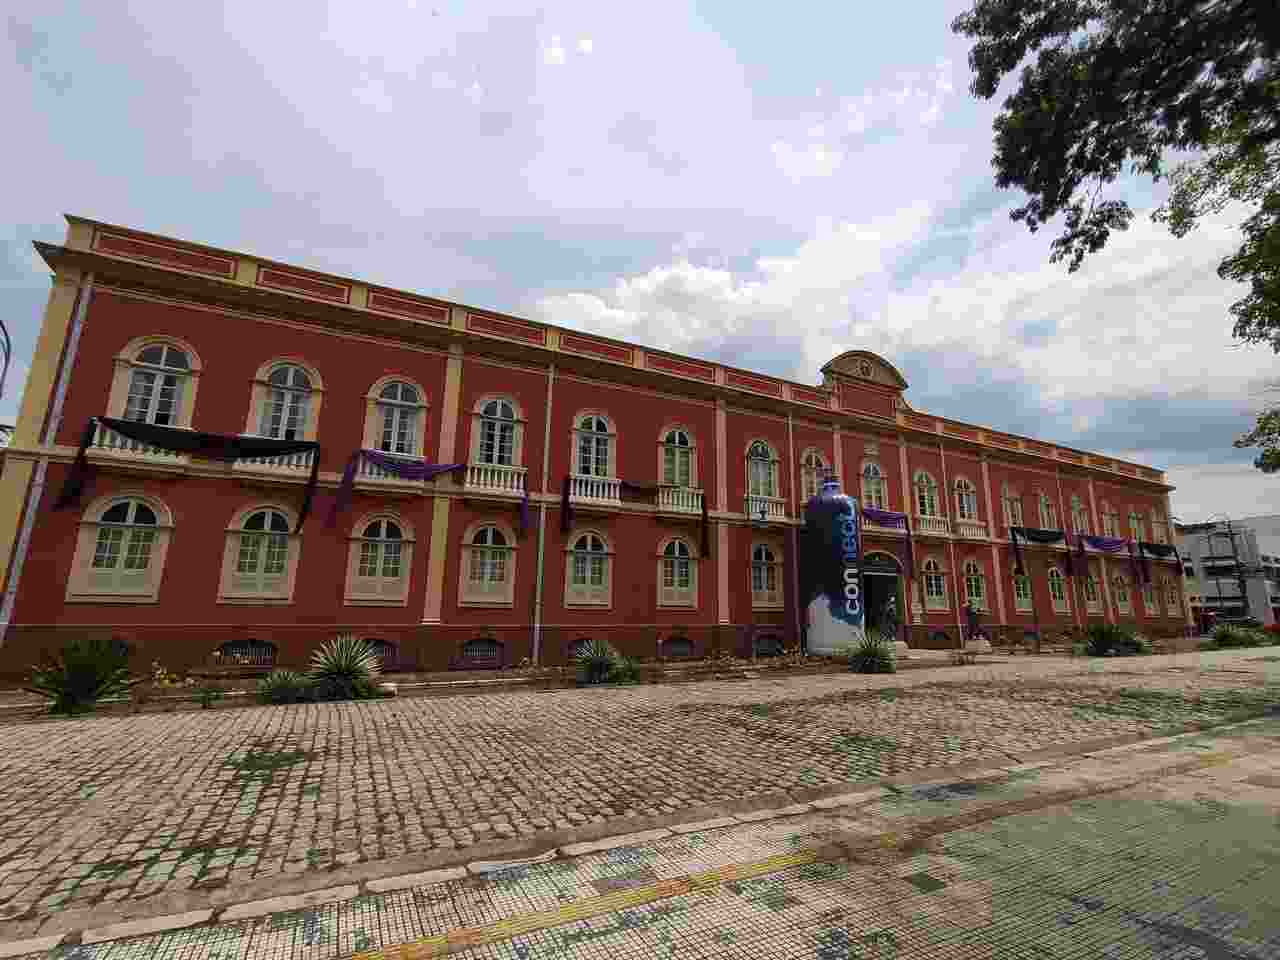 Palacete Provincial de Manaus abriga 5 museus e tem entrada gratuita